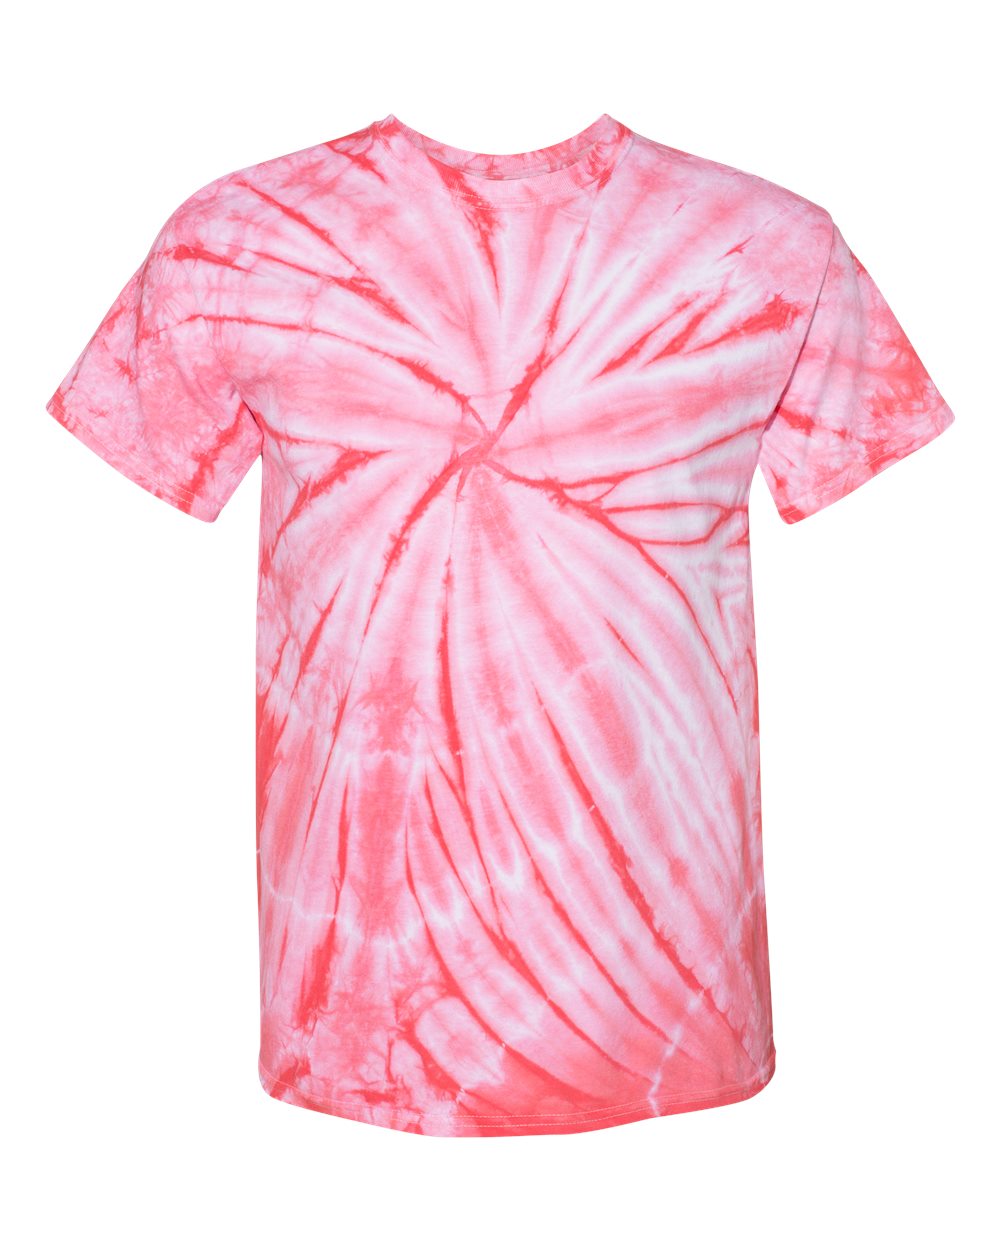 Dyneomite Cyclone Pinwheel Tie-Dyed T-Shirt